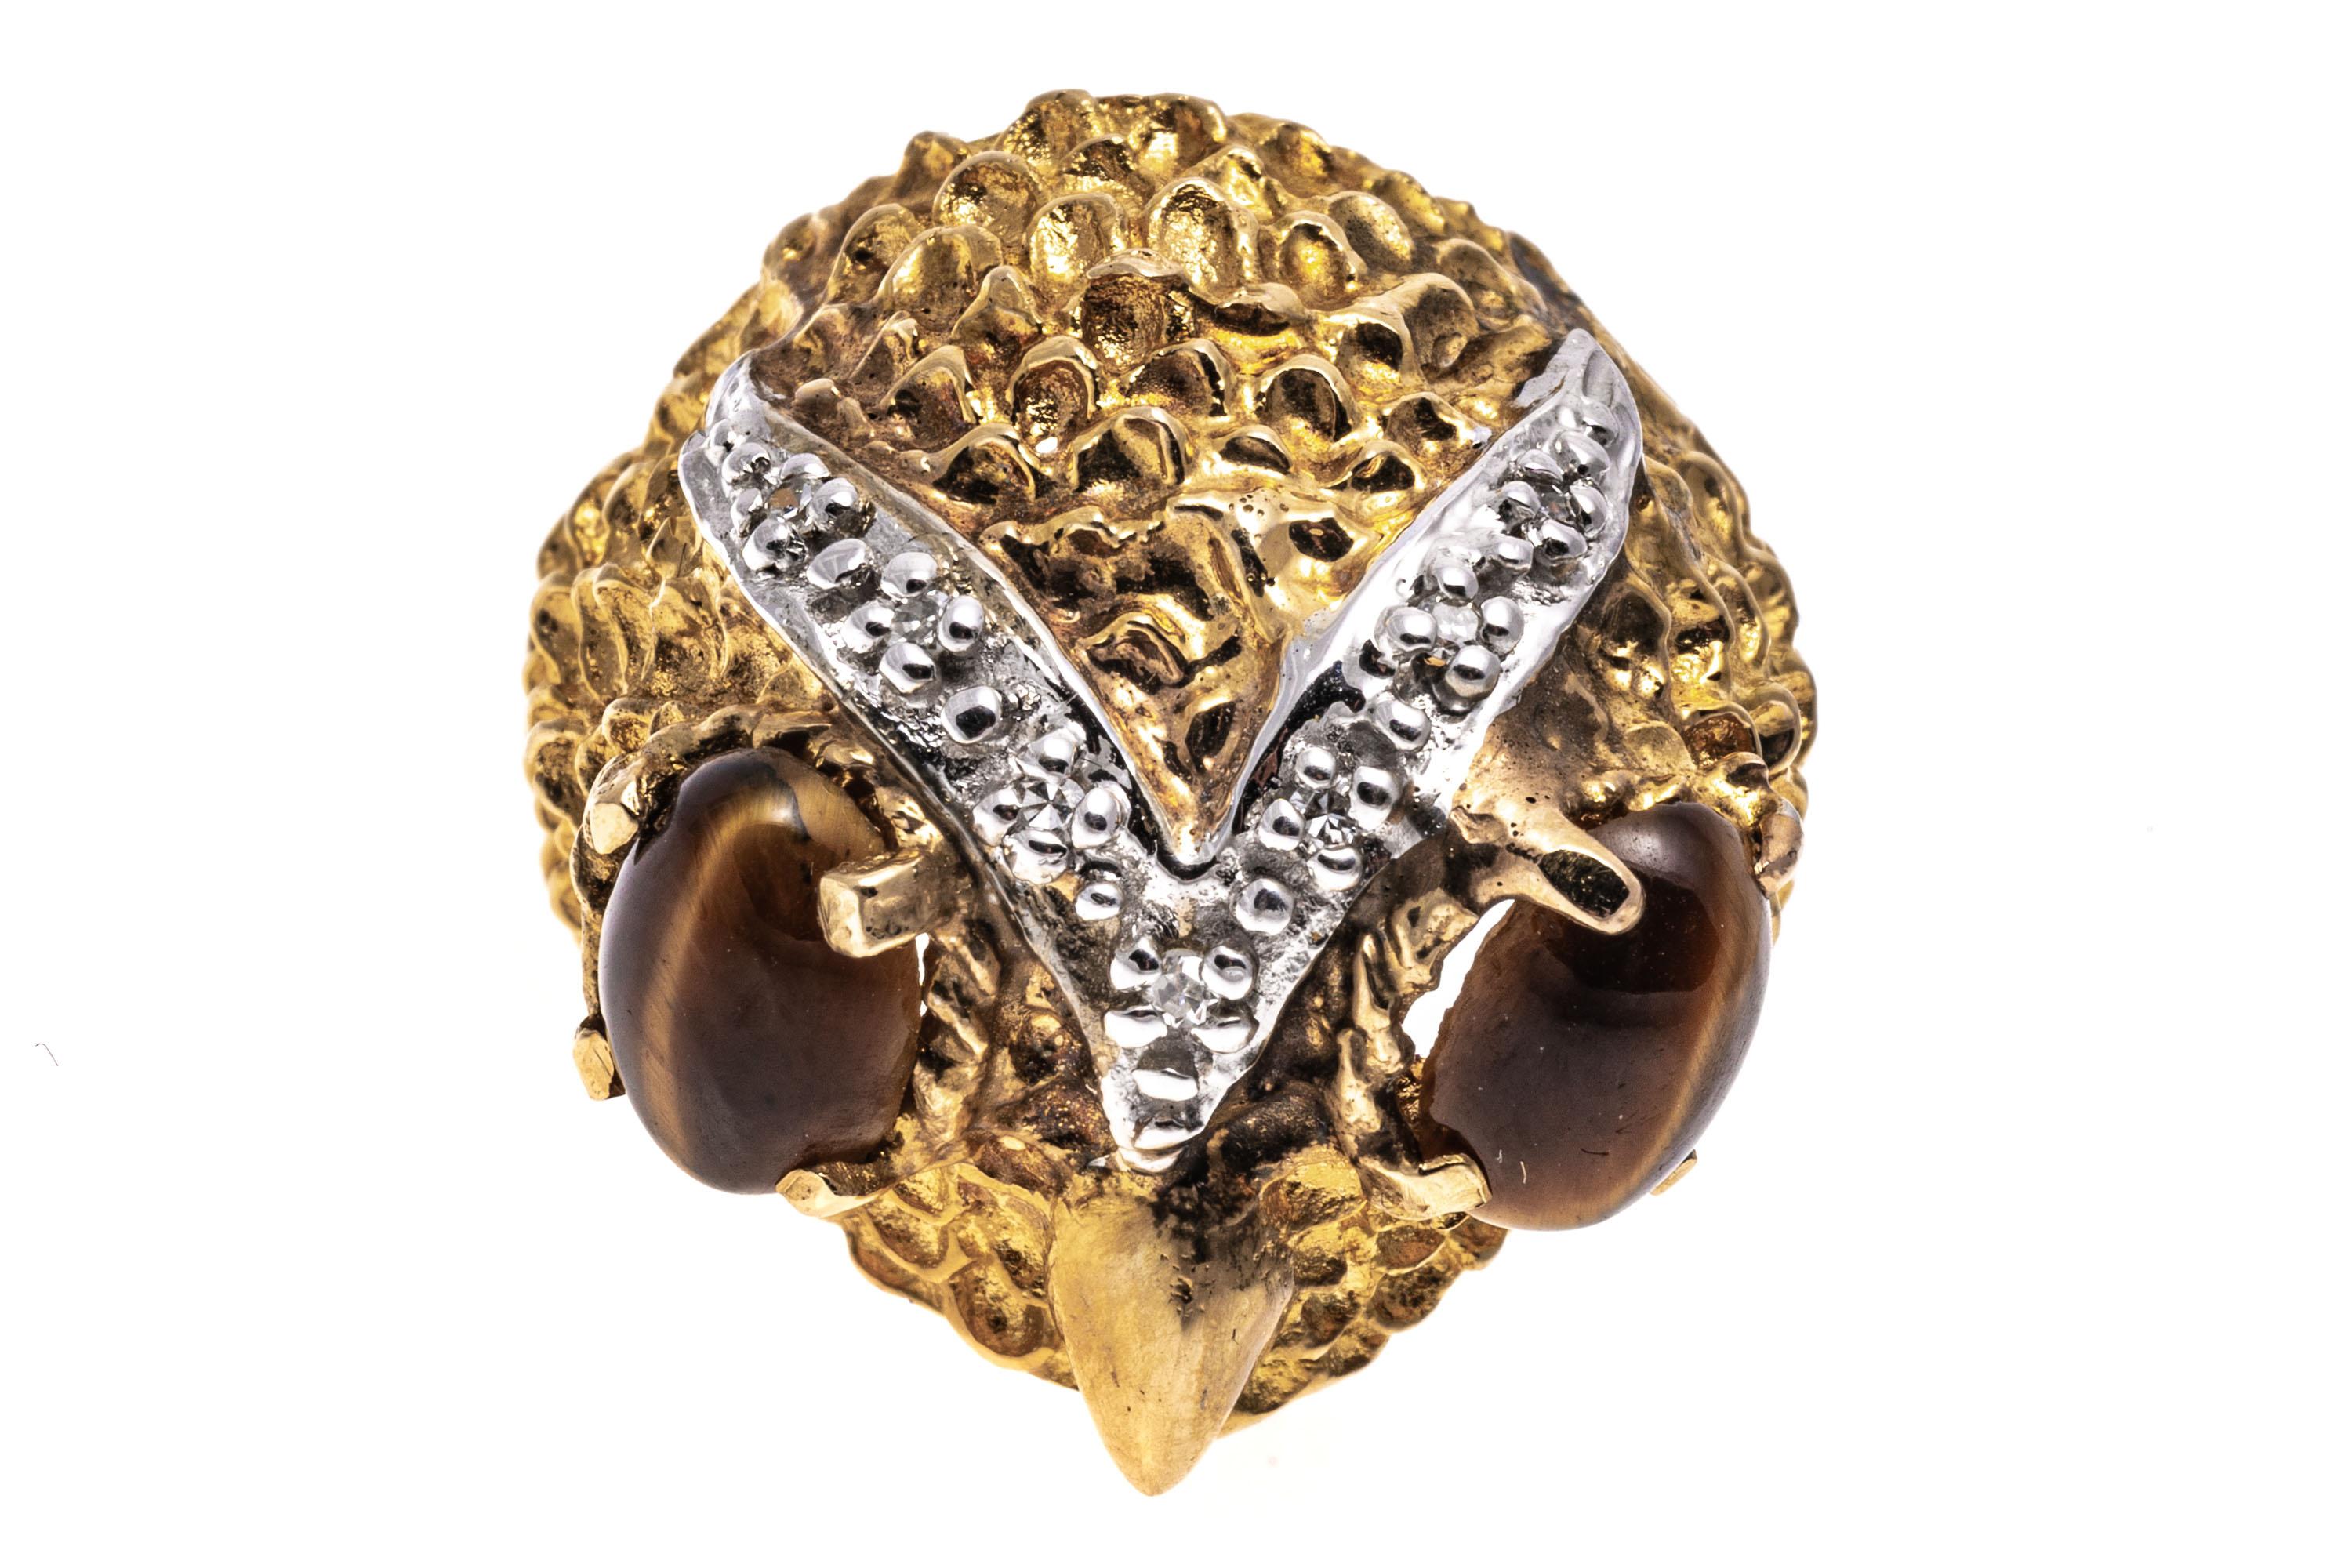 14k Gelbgold Delightful strukturierte Eule Kopf Ring mit Diamanten, 0,05 TCW
Dieser entzückende Ring ist ein Eulenkopfmotiv, verziert mit matten, strukturierten Federn, einem hochglanzpolierten Schnabel und zwei ovalen Tigeraugen im